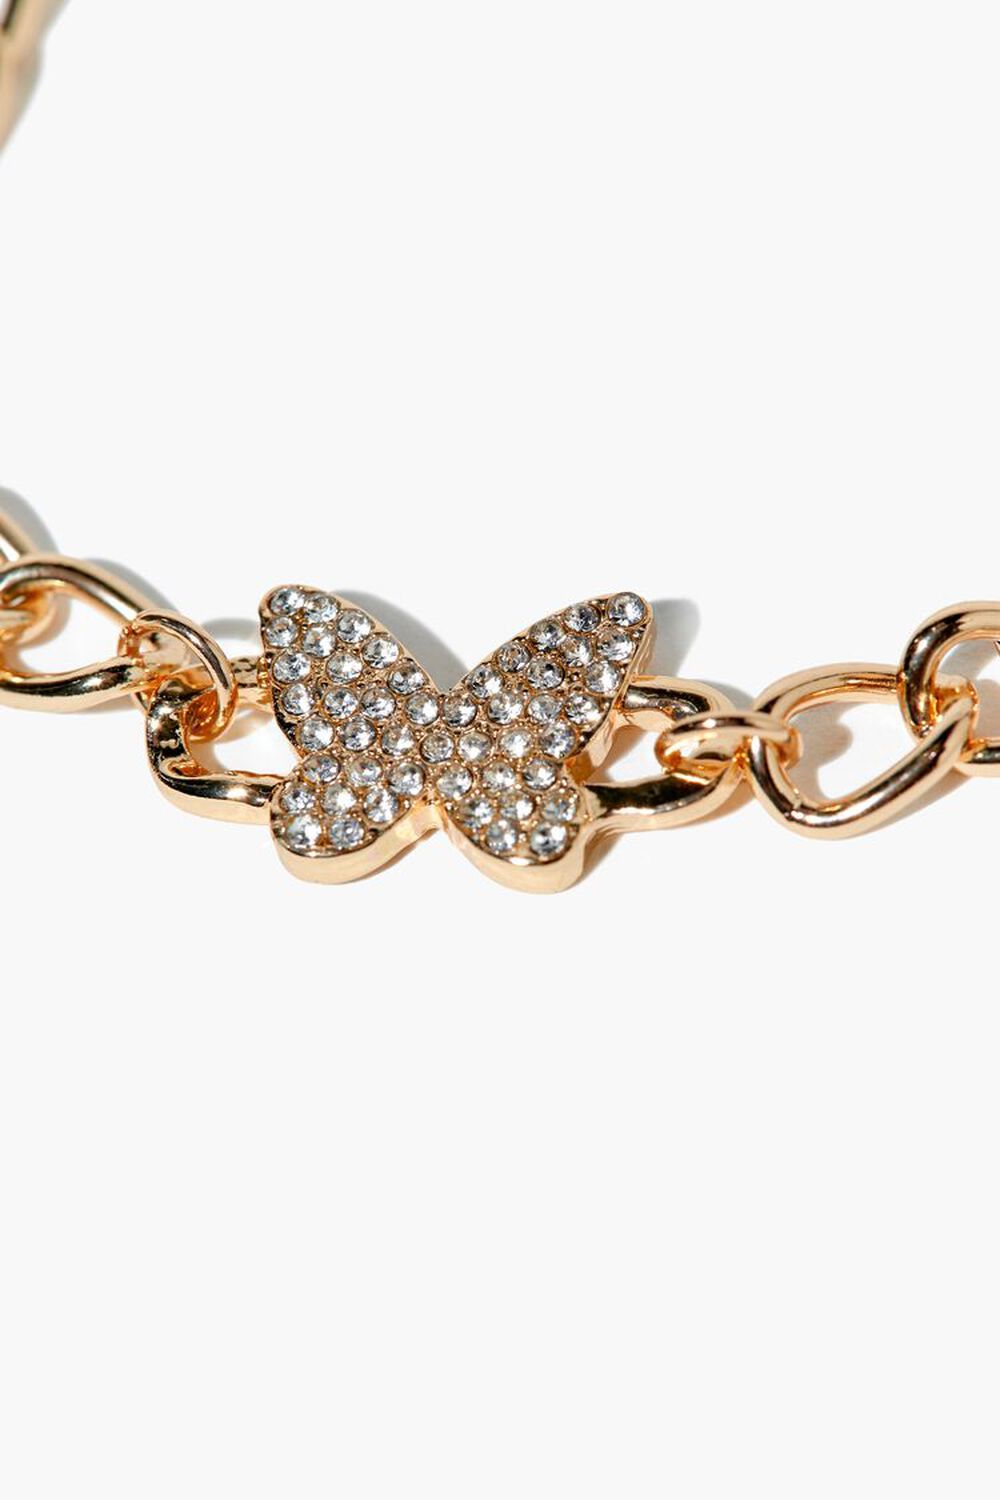 Rhinestone Butterfly Chain Bracelet, image 3